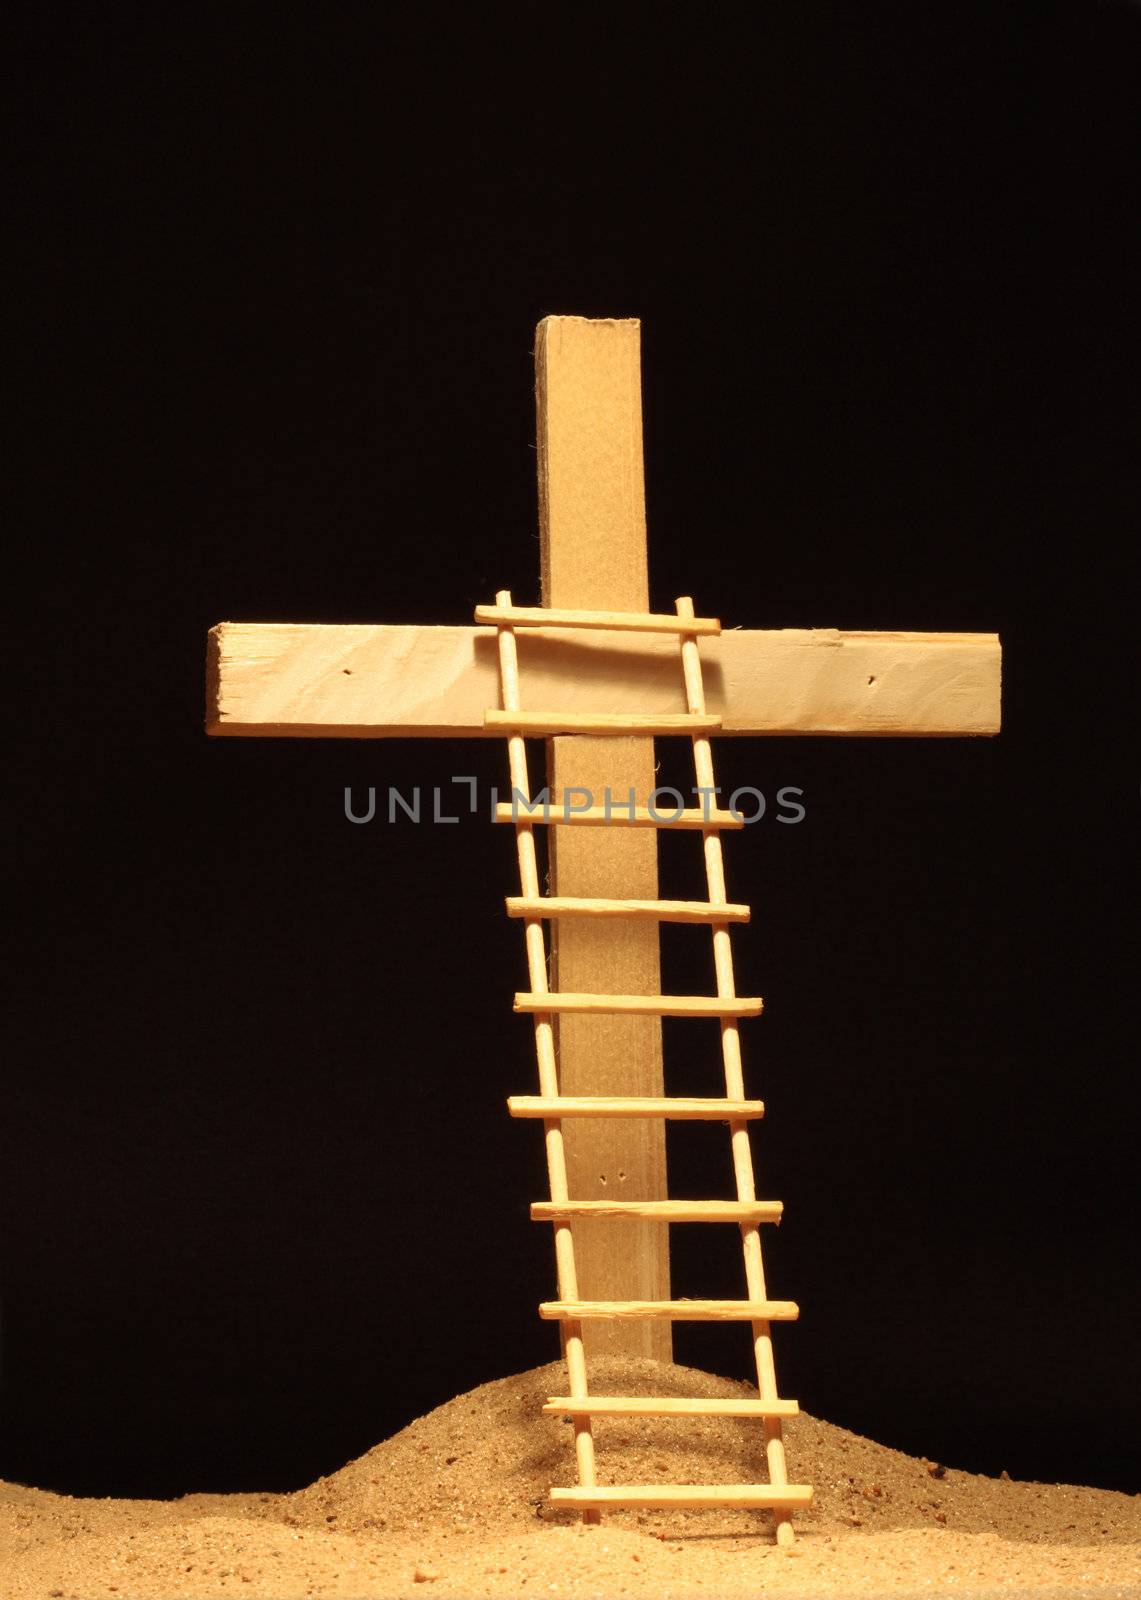 Ladder standing near wooden cross on dark background